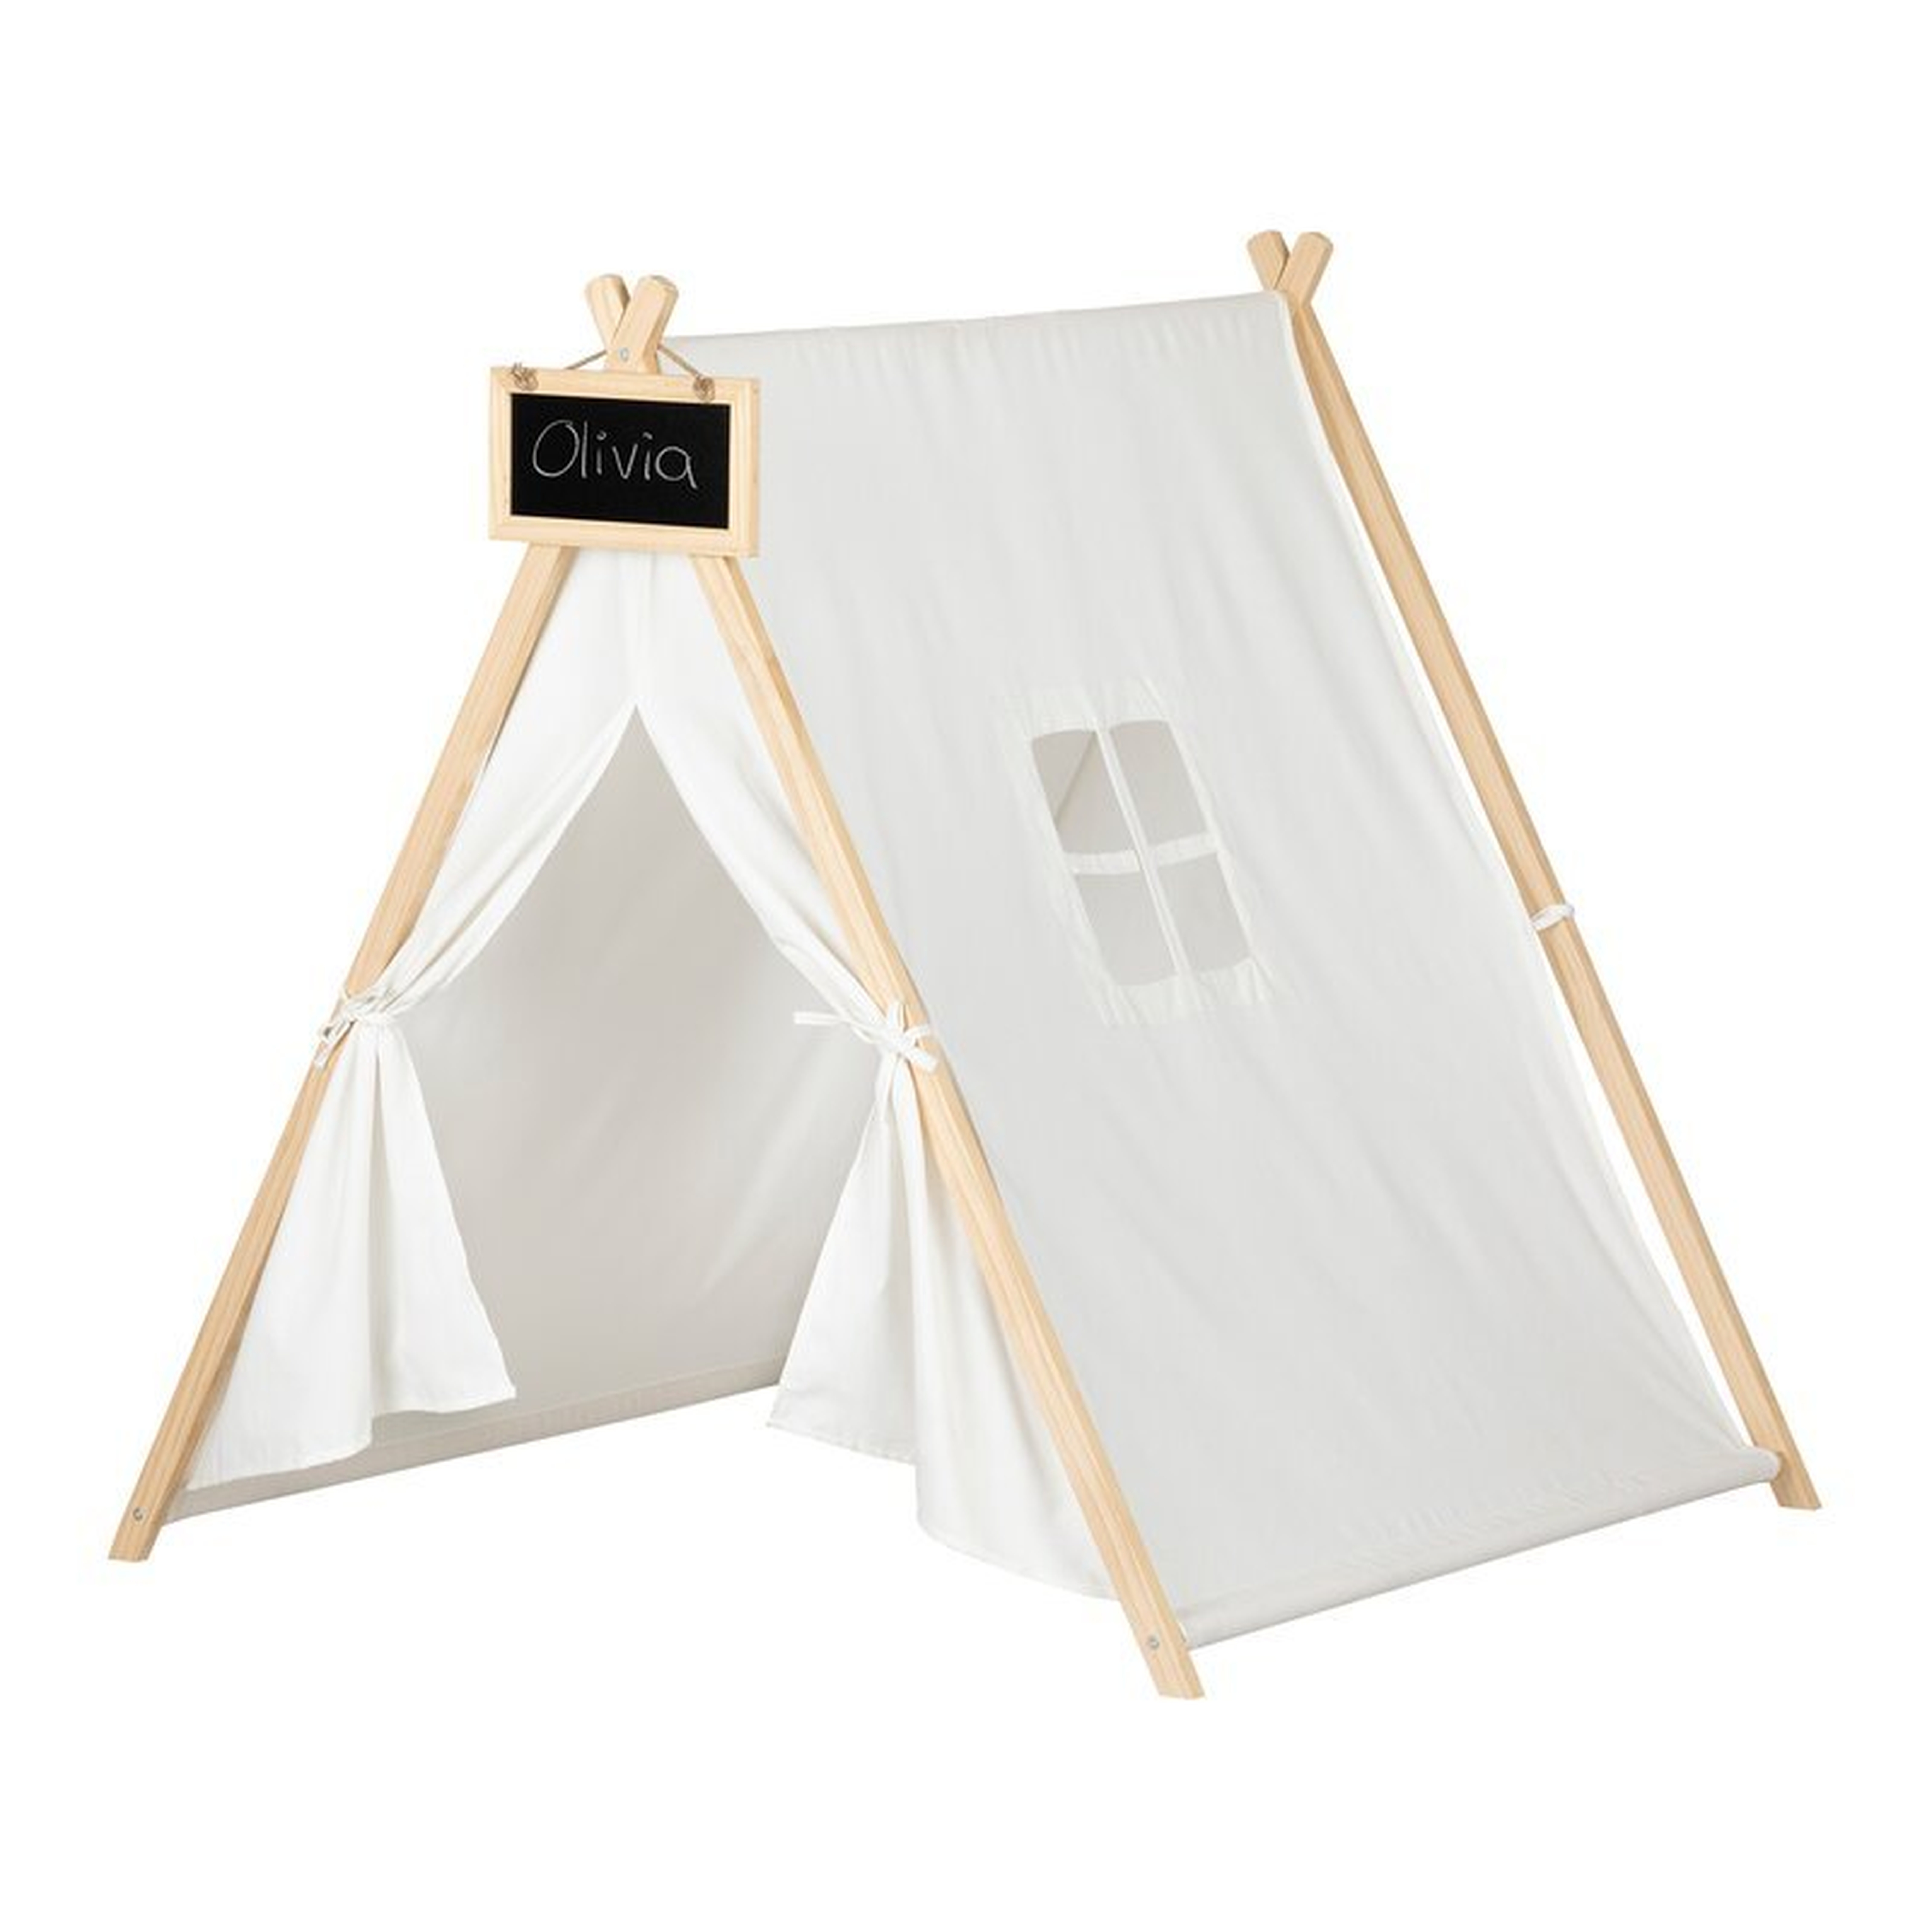 Sweedi Scandinavian Play Tent - Wayfair